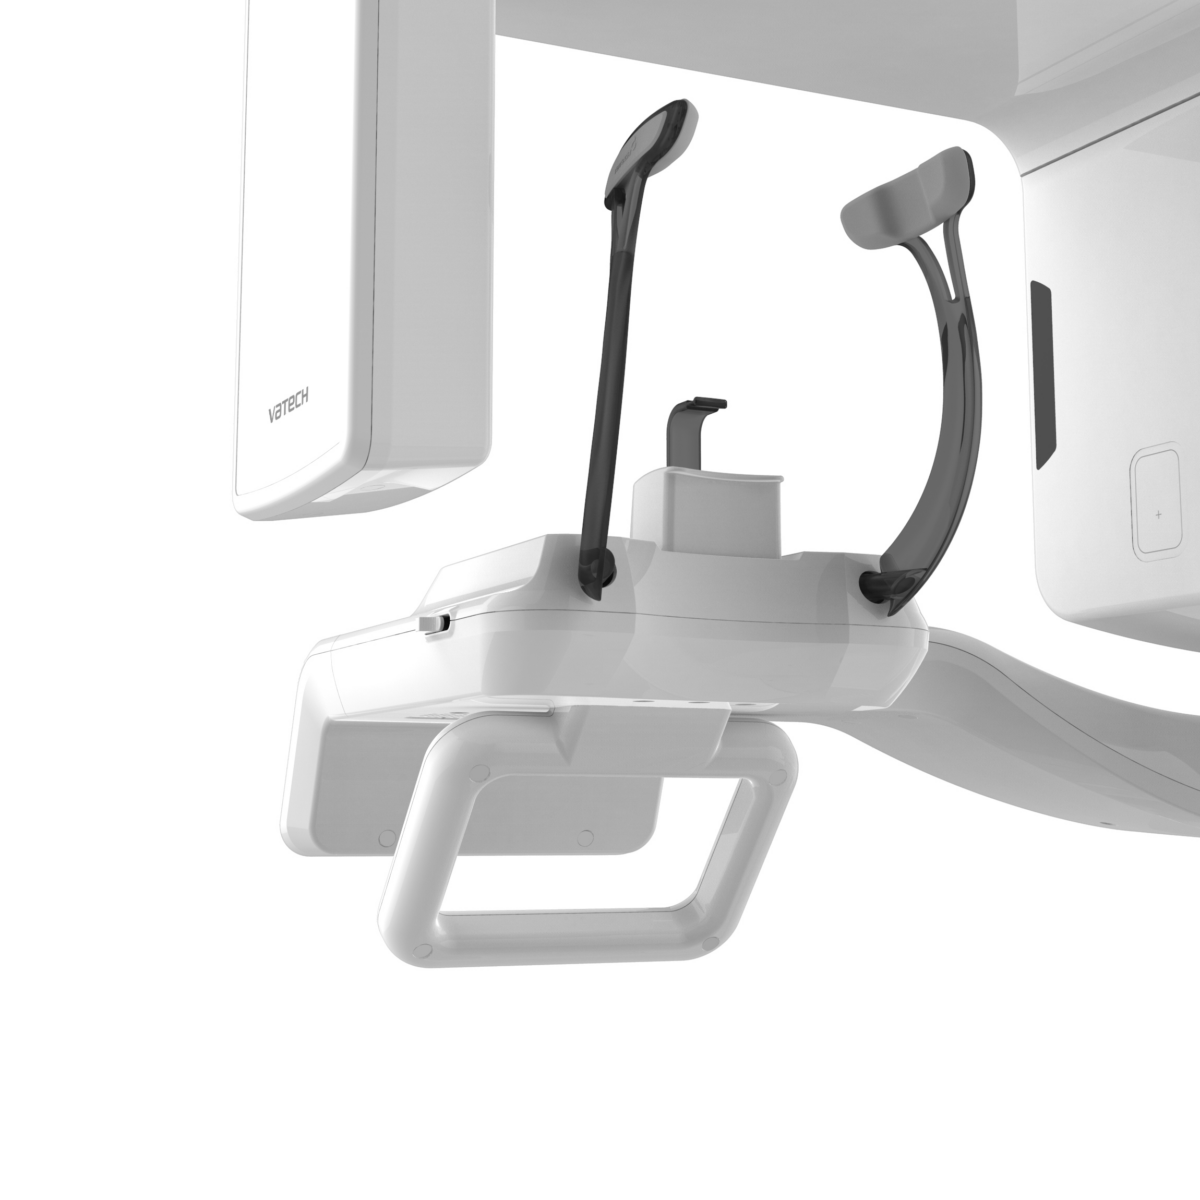 VATECH-smart-2-cone-beam-ceph-haute-qualite-radiographie-ergonomique